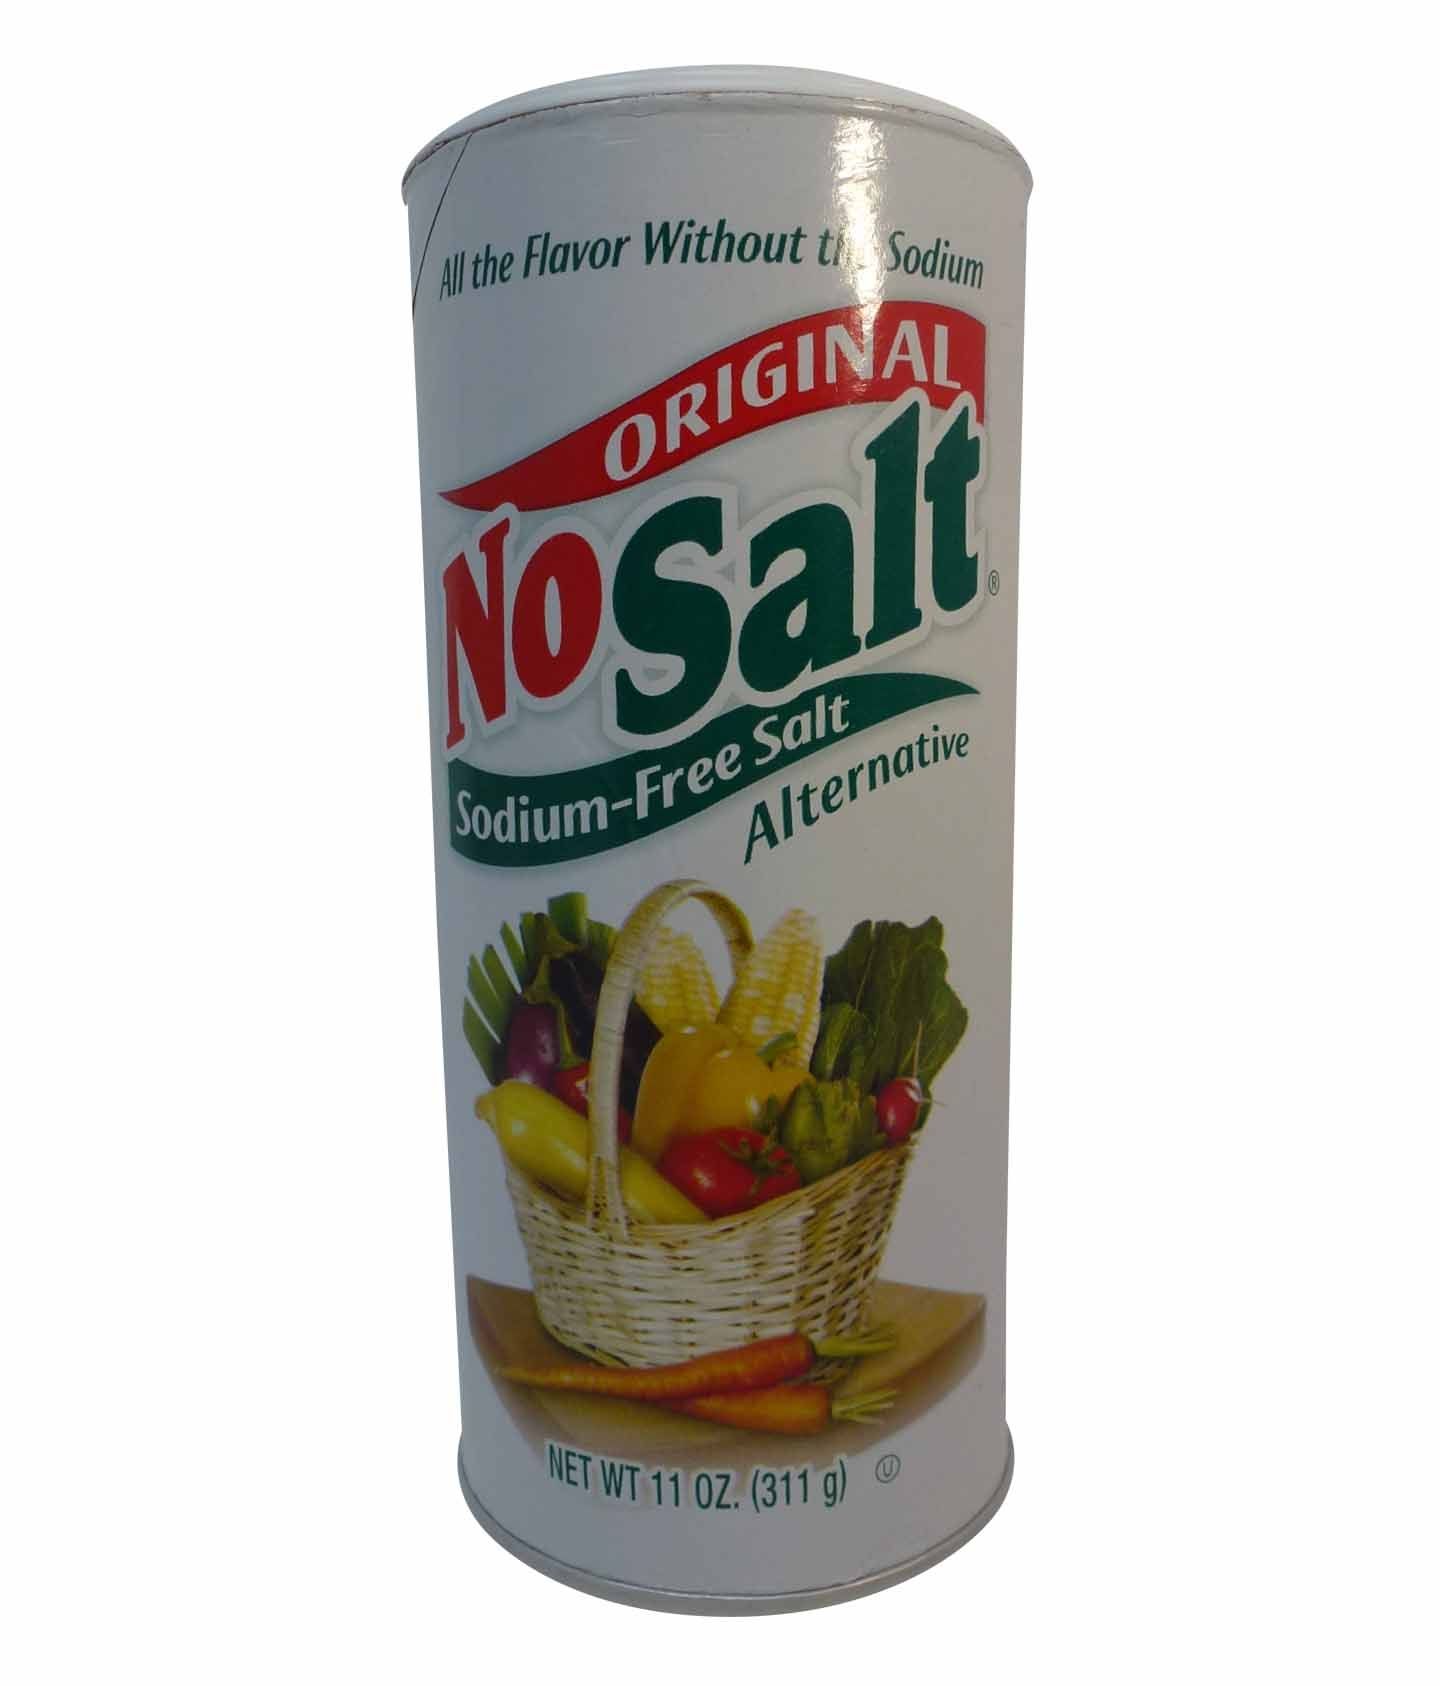 https://www.tasteamerica.co.uk/media/catalog/product/cache/b78bd81bd14f73c831b1cdd2bb6b6fb0/n/o/nosalt_original_sodium-free_salt_alternative_311g_-_027443360034.jpg